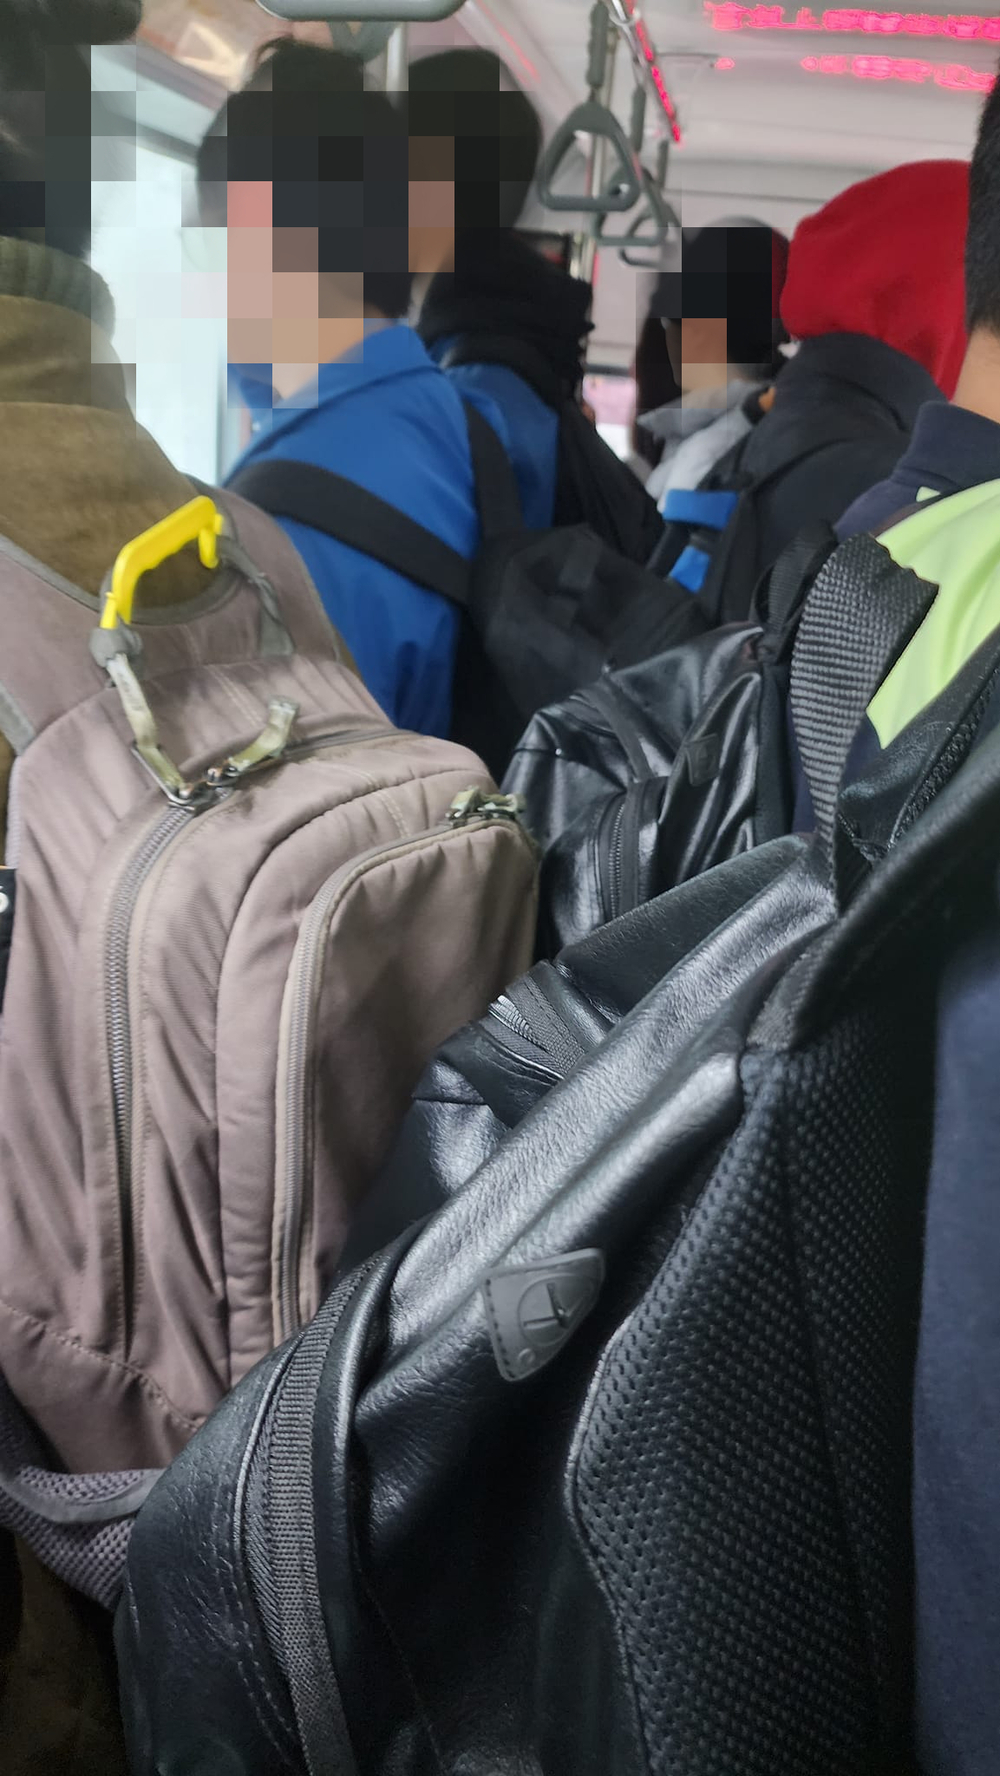 原PO貼出一張多名乘客背著後背包，搭乘公車的相片 。圖／翻攝自臉書社團「爆料公社」